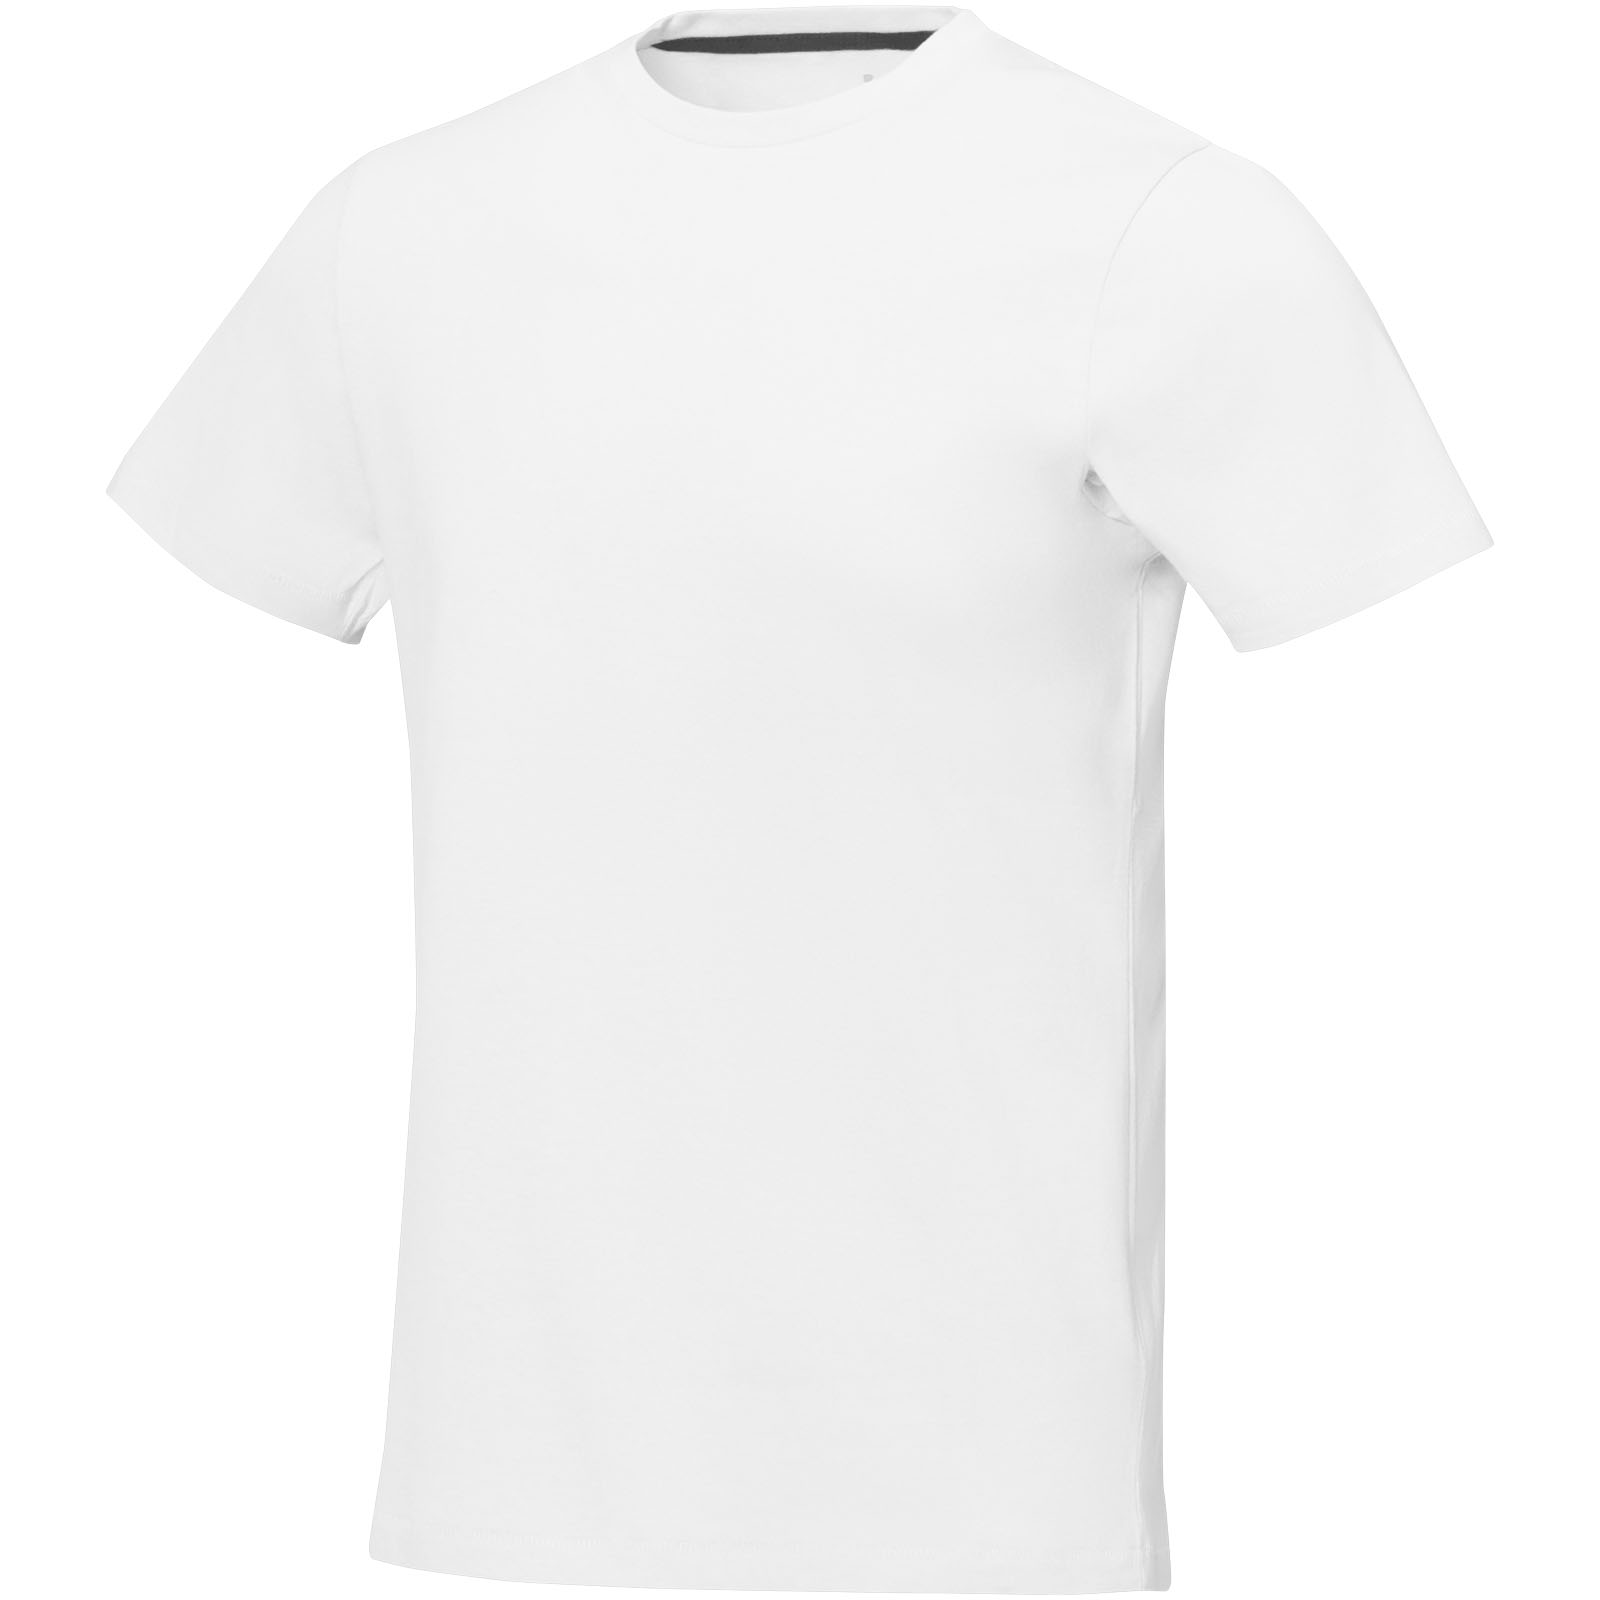 Advertising T-shirts - Nanaimo short sleeve men's t-shirt